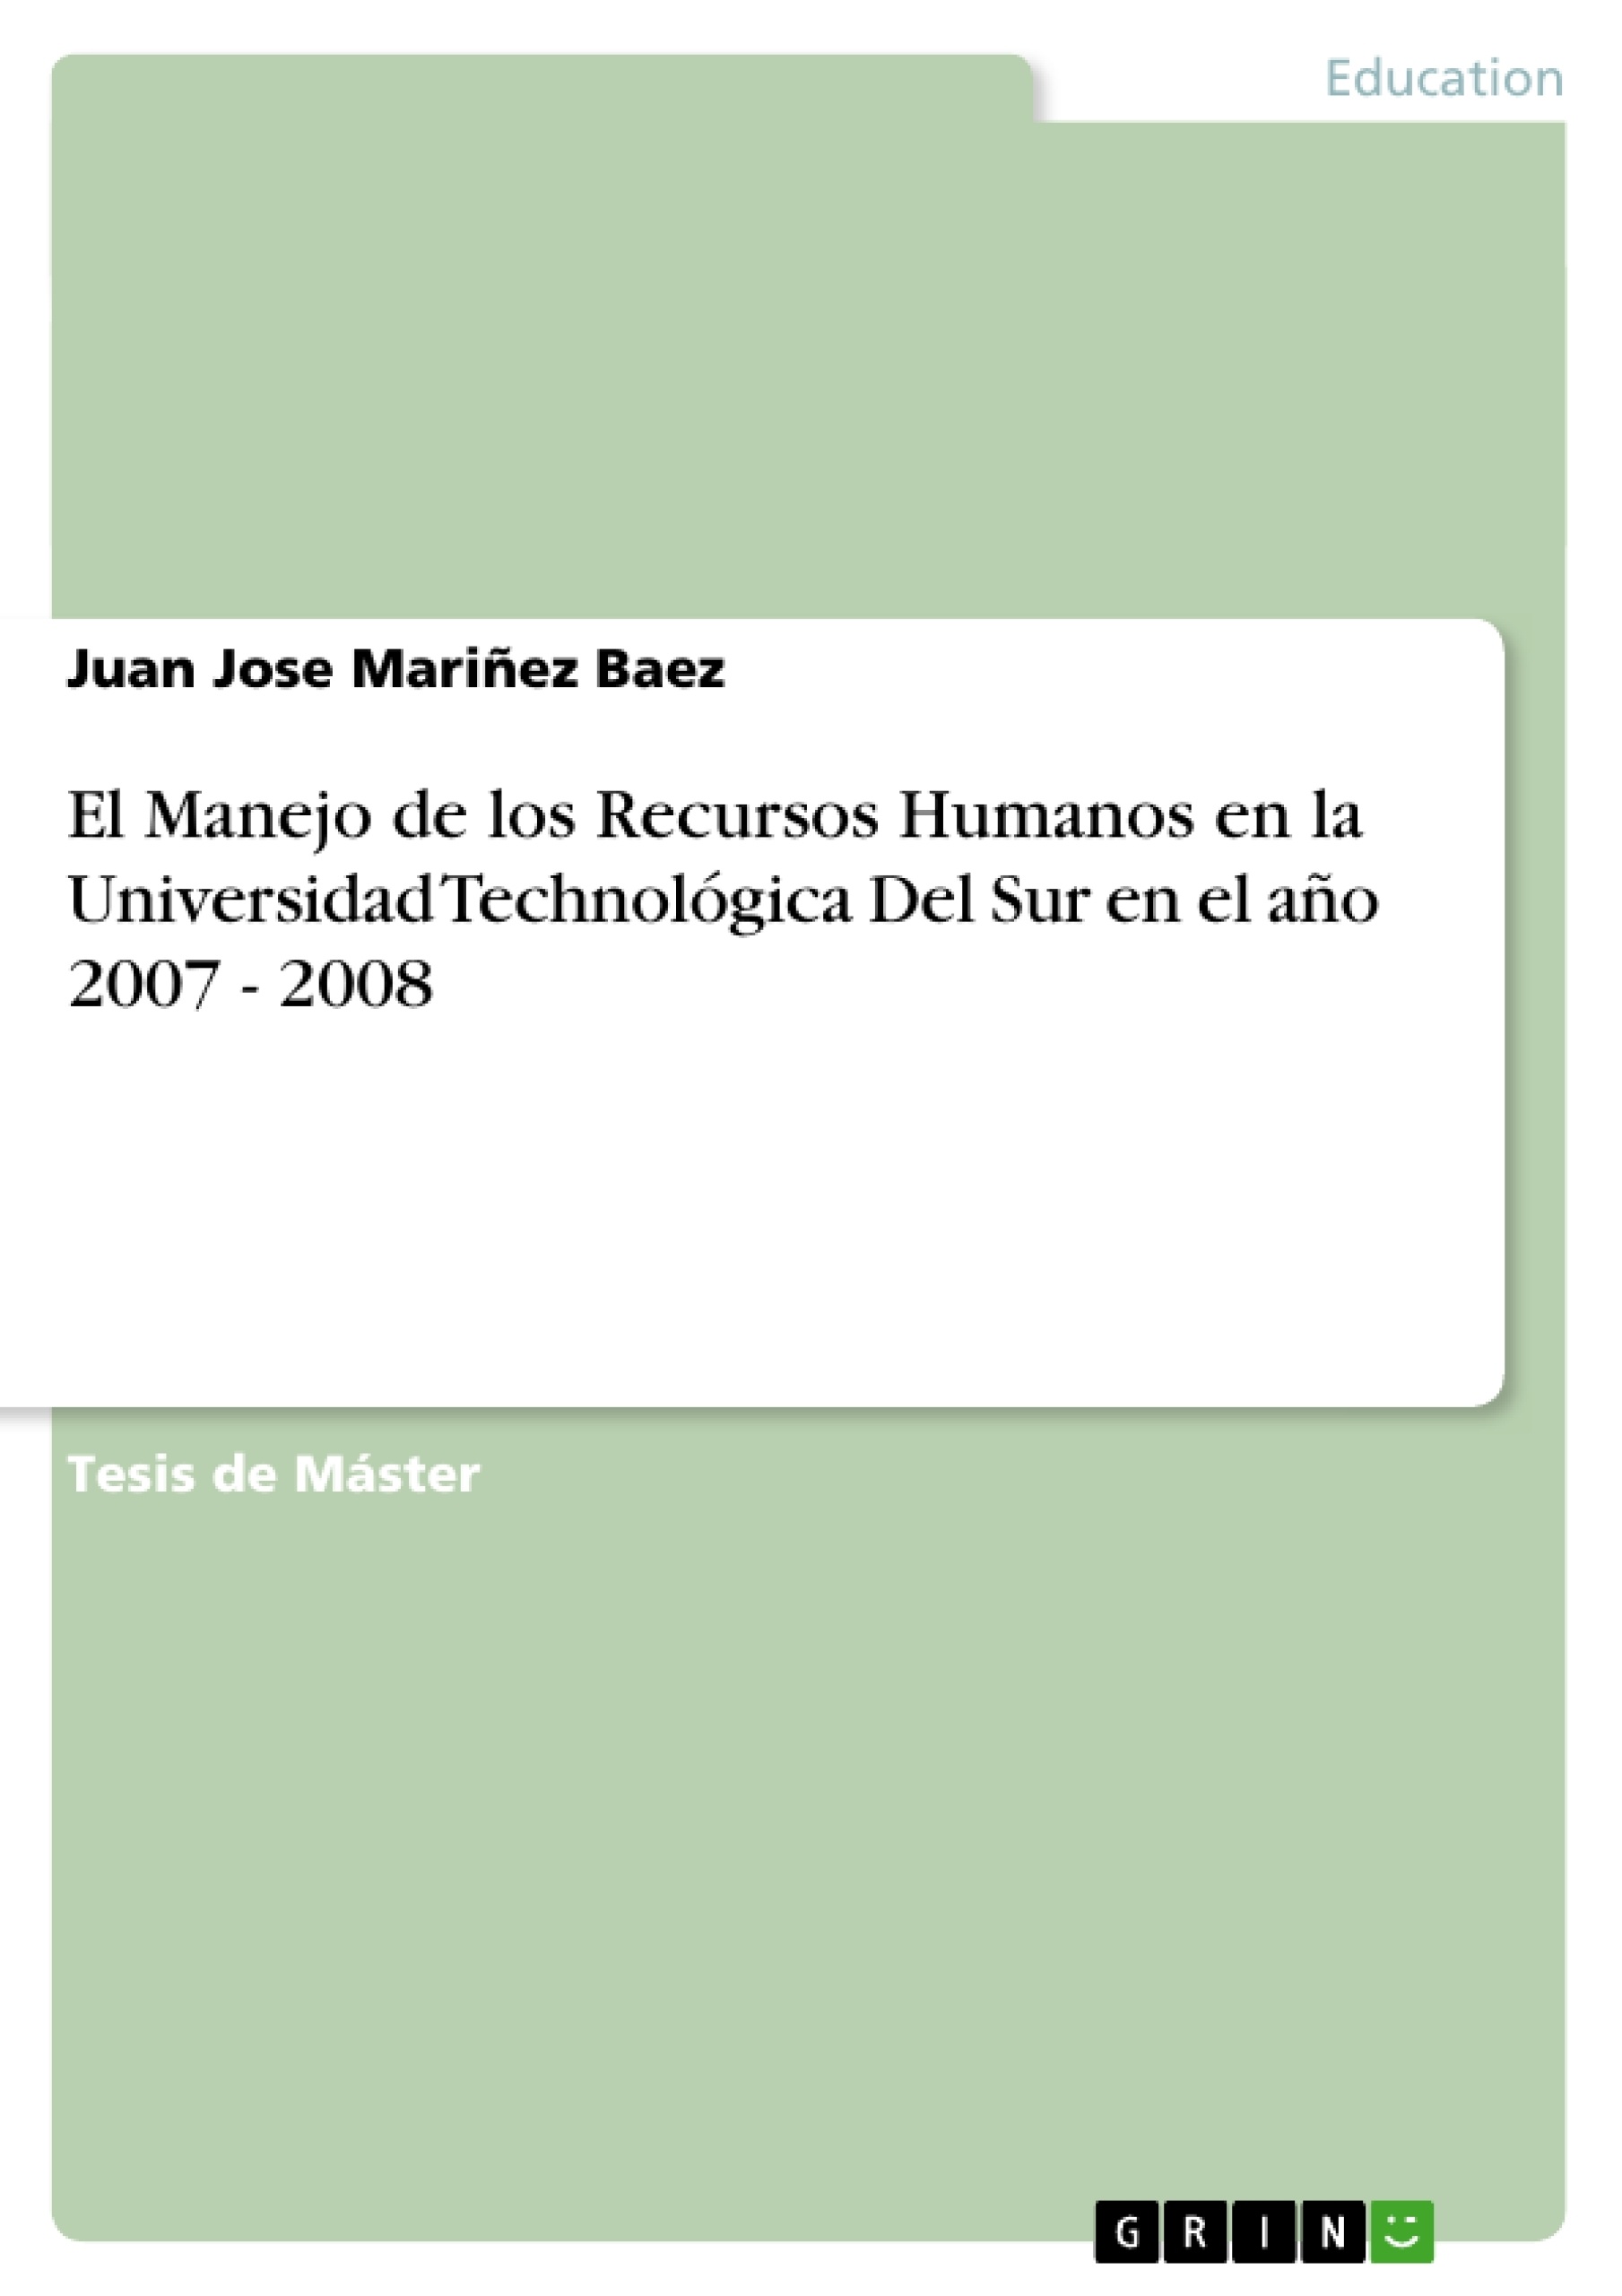 Título: El Manejo de los Recursos Humanos en la Universidad Technológica Del Sur en el año 2007 - 2008